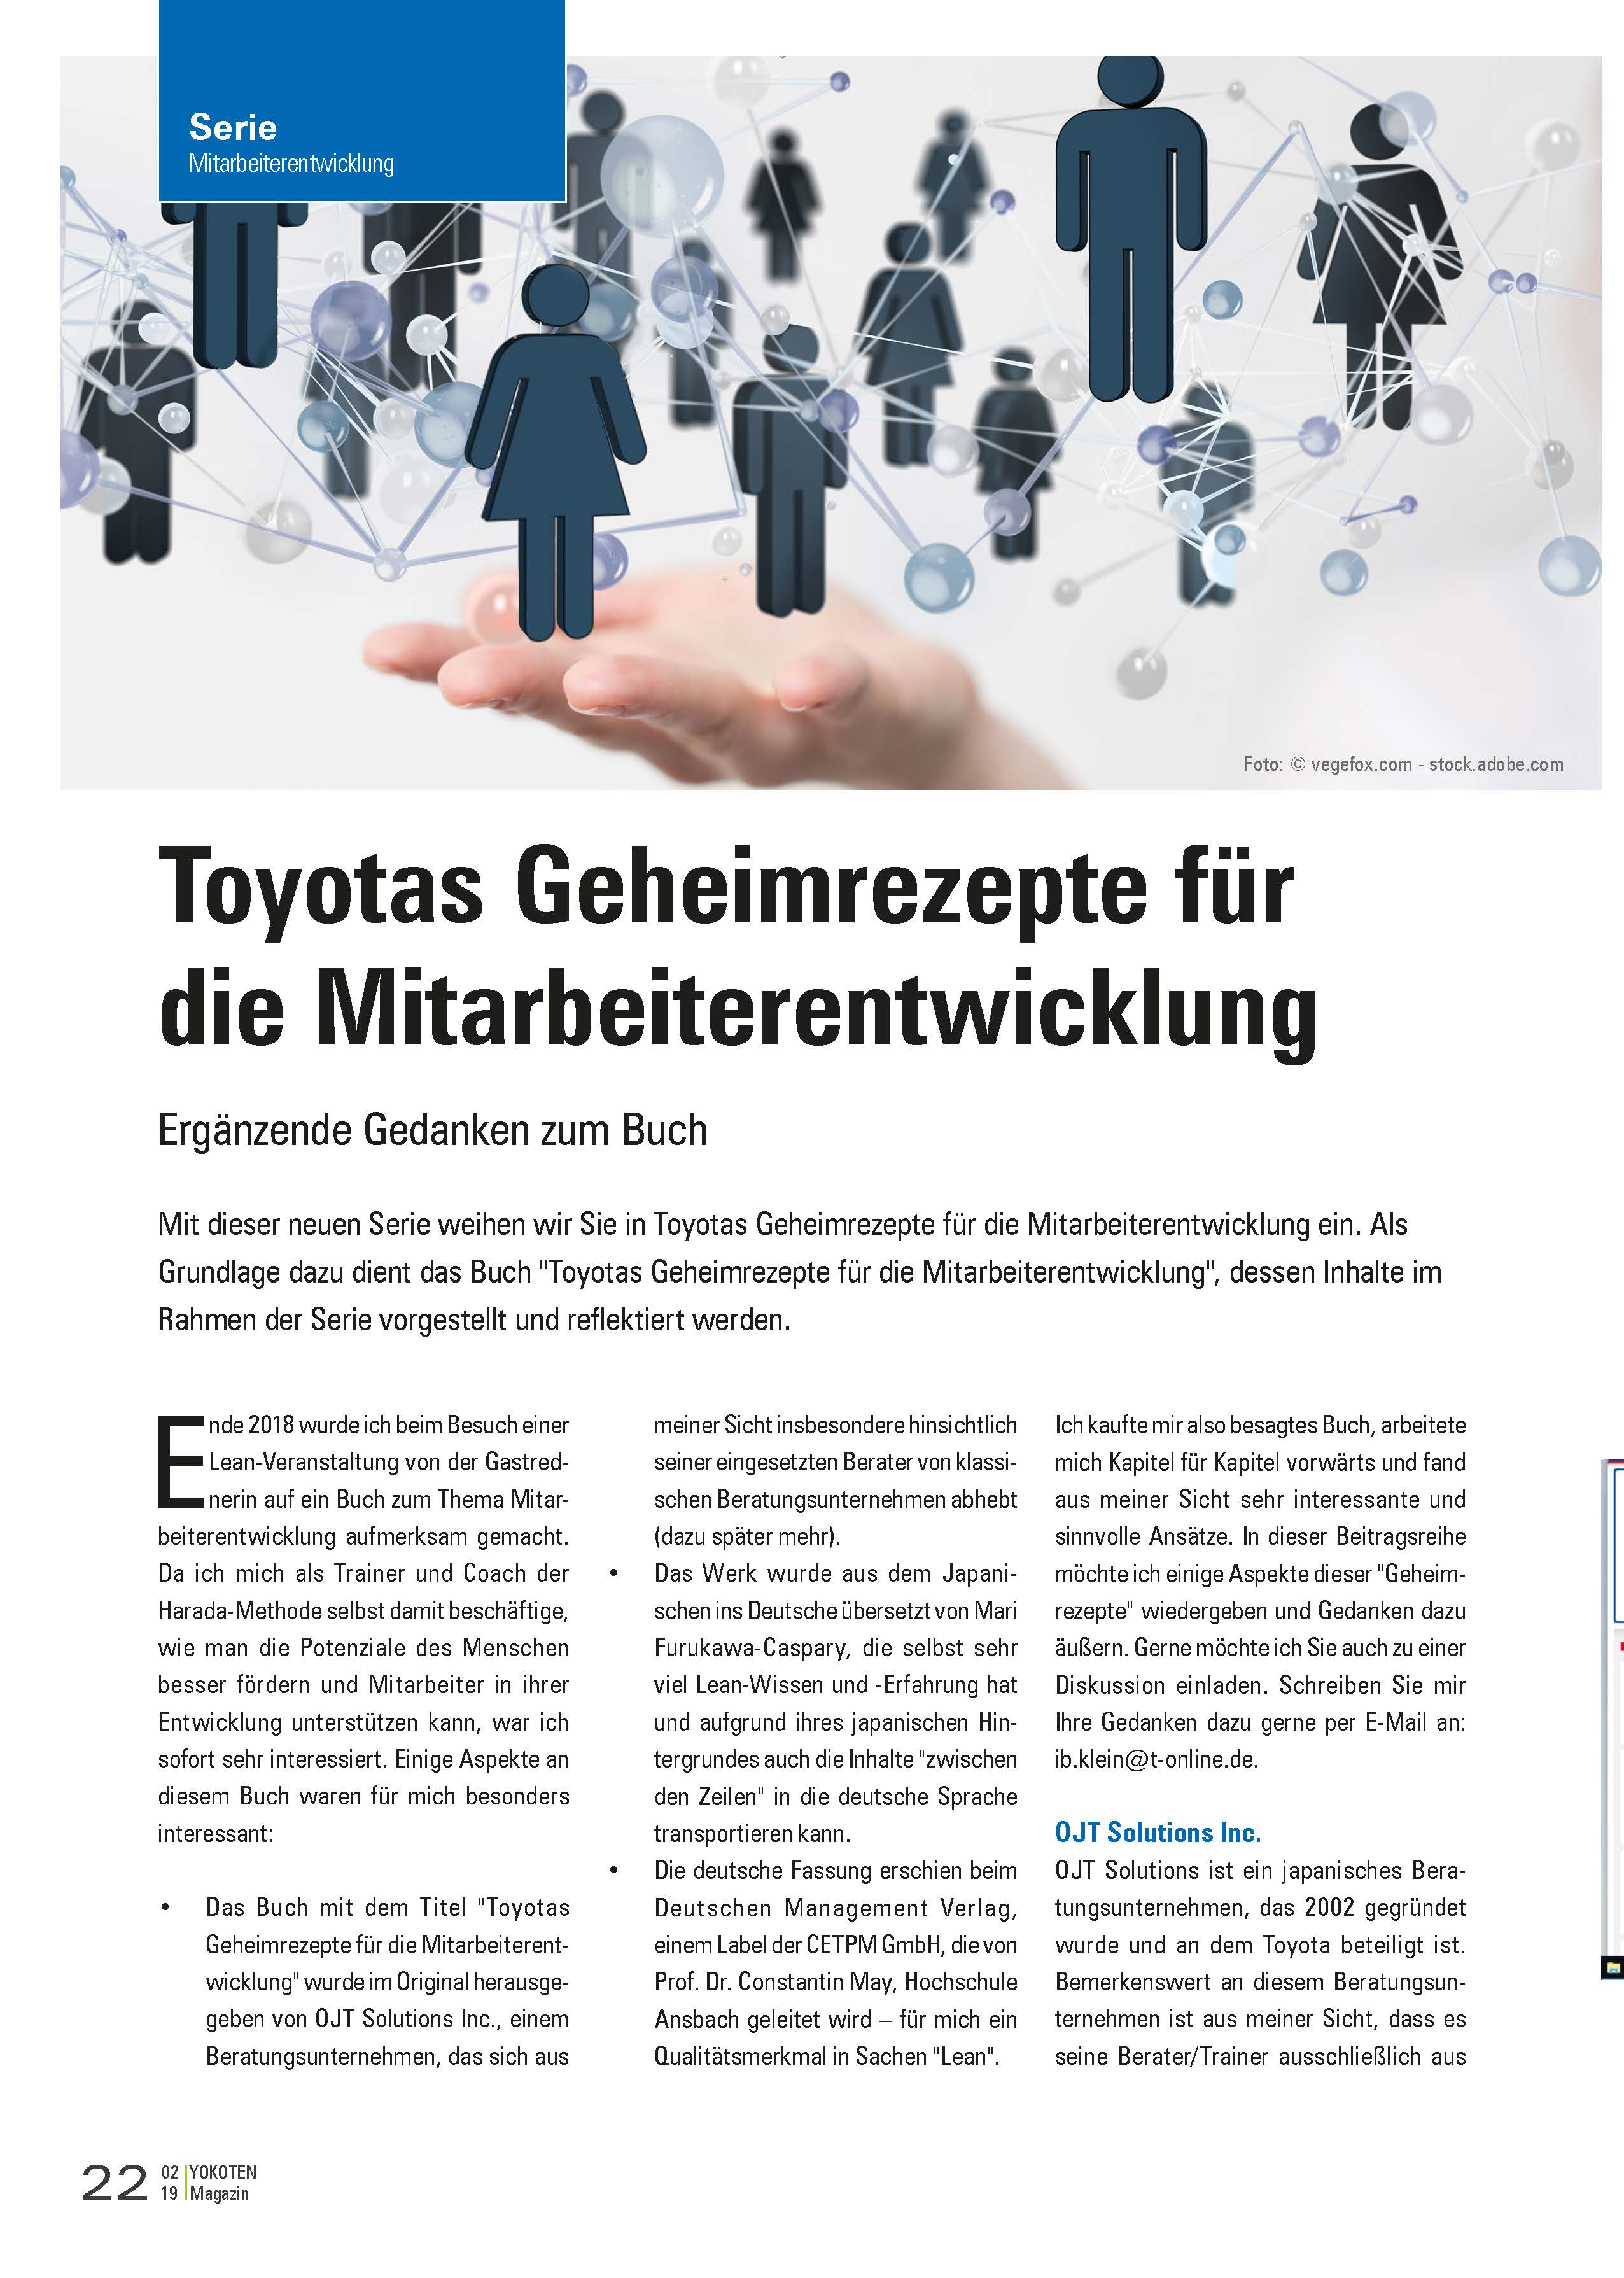 YOKOTEN-Artikel: Toyotas Geheimrezepte für die Mitarbeiterentwicklung